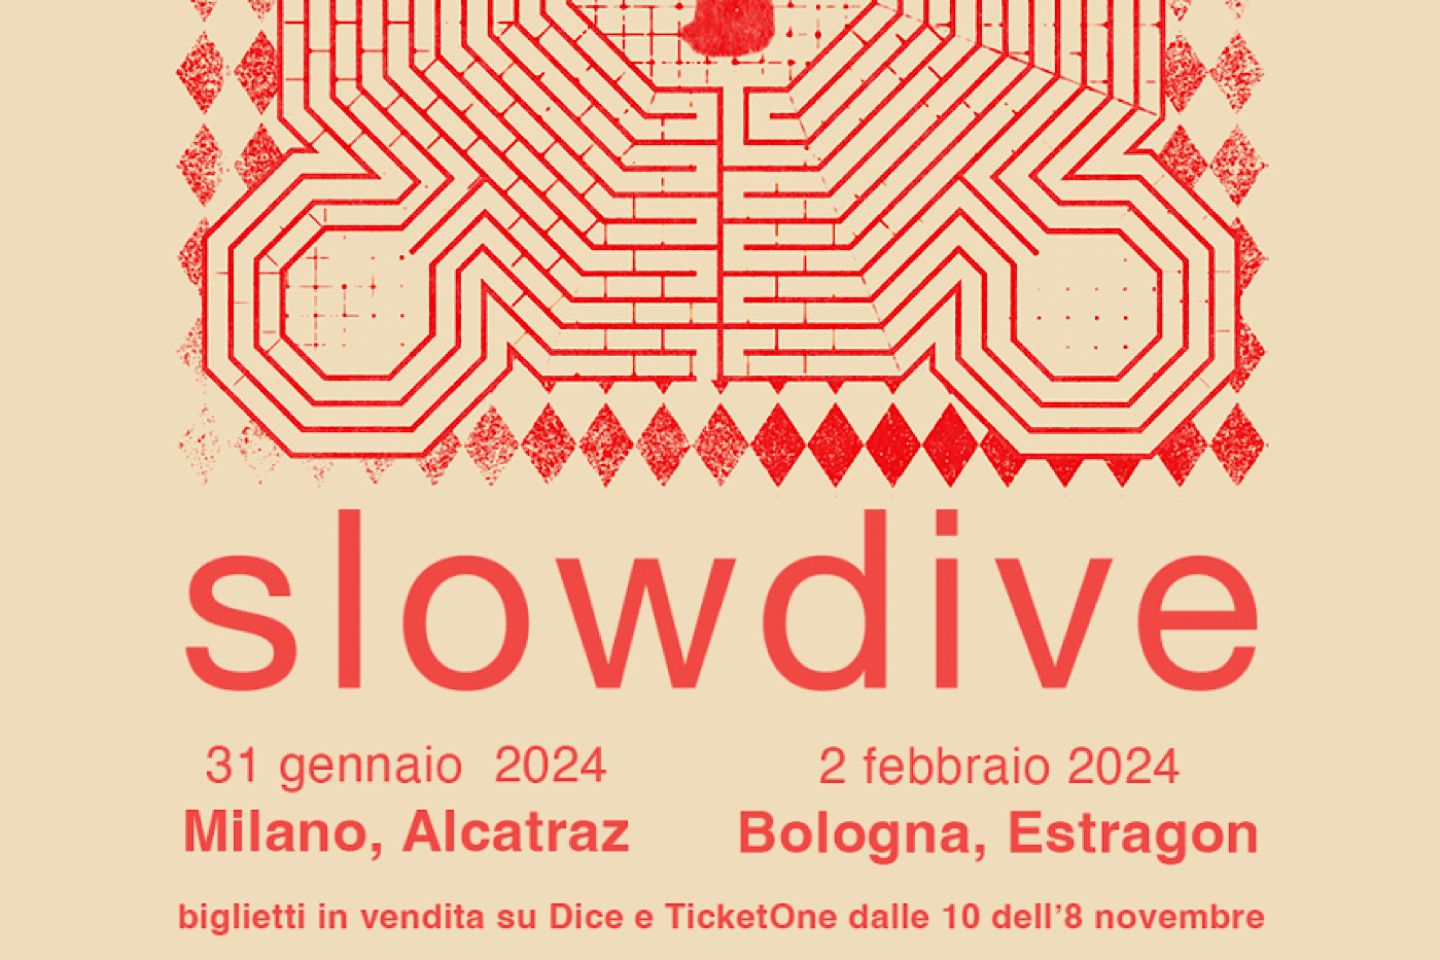 SLOWDIVE live in Italia per due concerti: il 31 gennaio all’Alcatraz di Milano e il 2 febbraio all’Estragon di Bologna.